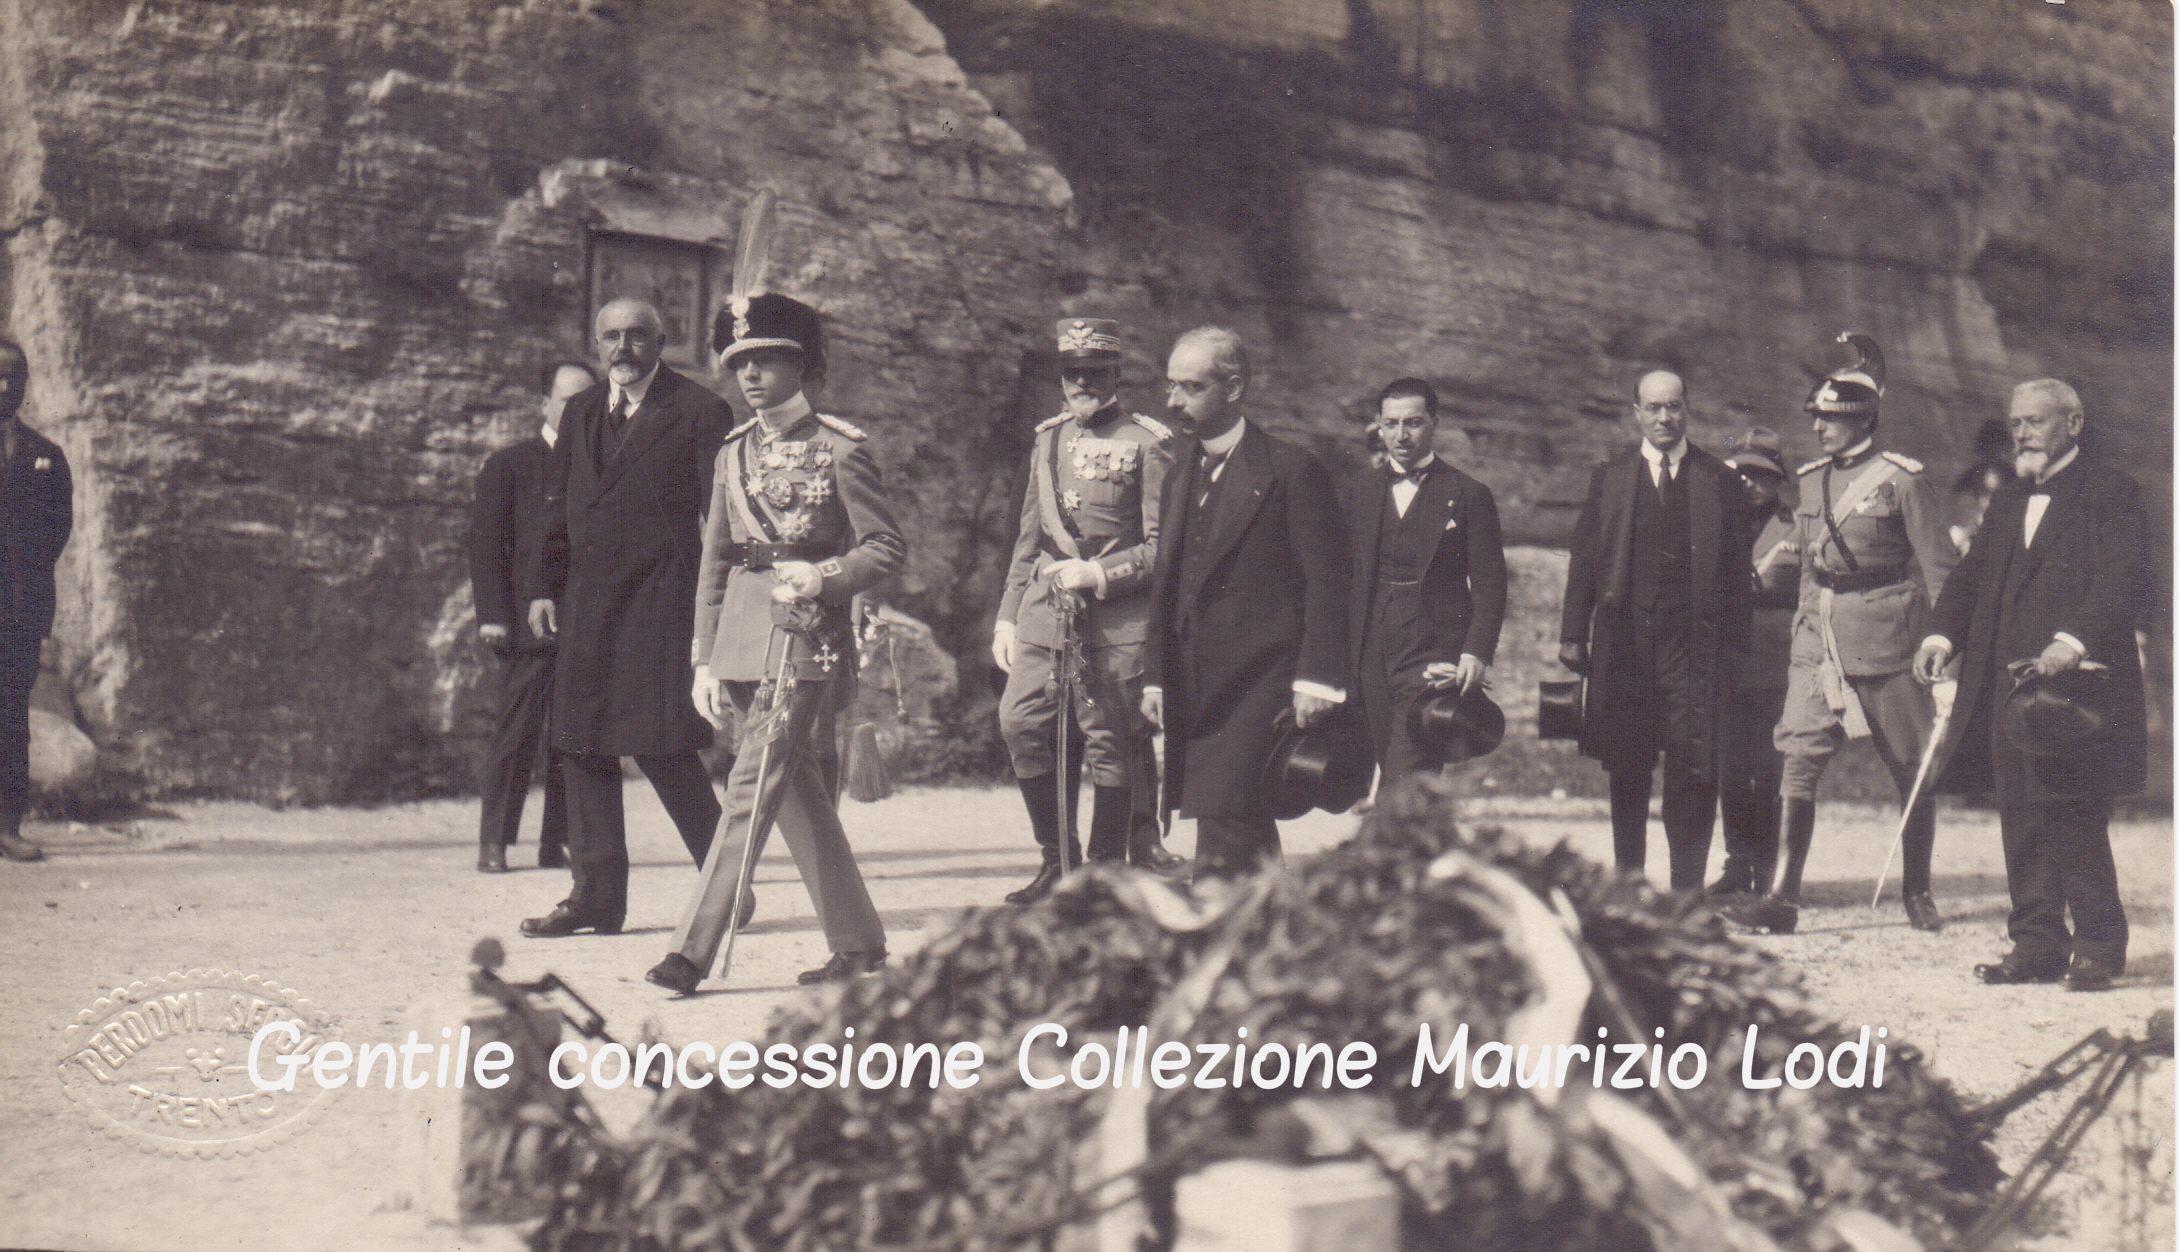 Trento 28 settembre 1923 Pellegrinaggio di S.A.R. Adalberto di Savoia Duca di Bergamo alla Fossa dei Martiri.jpg